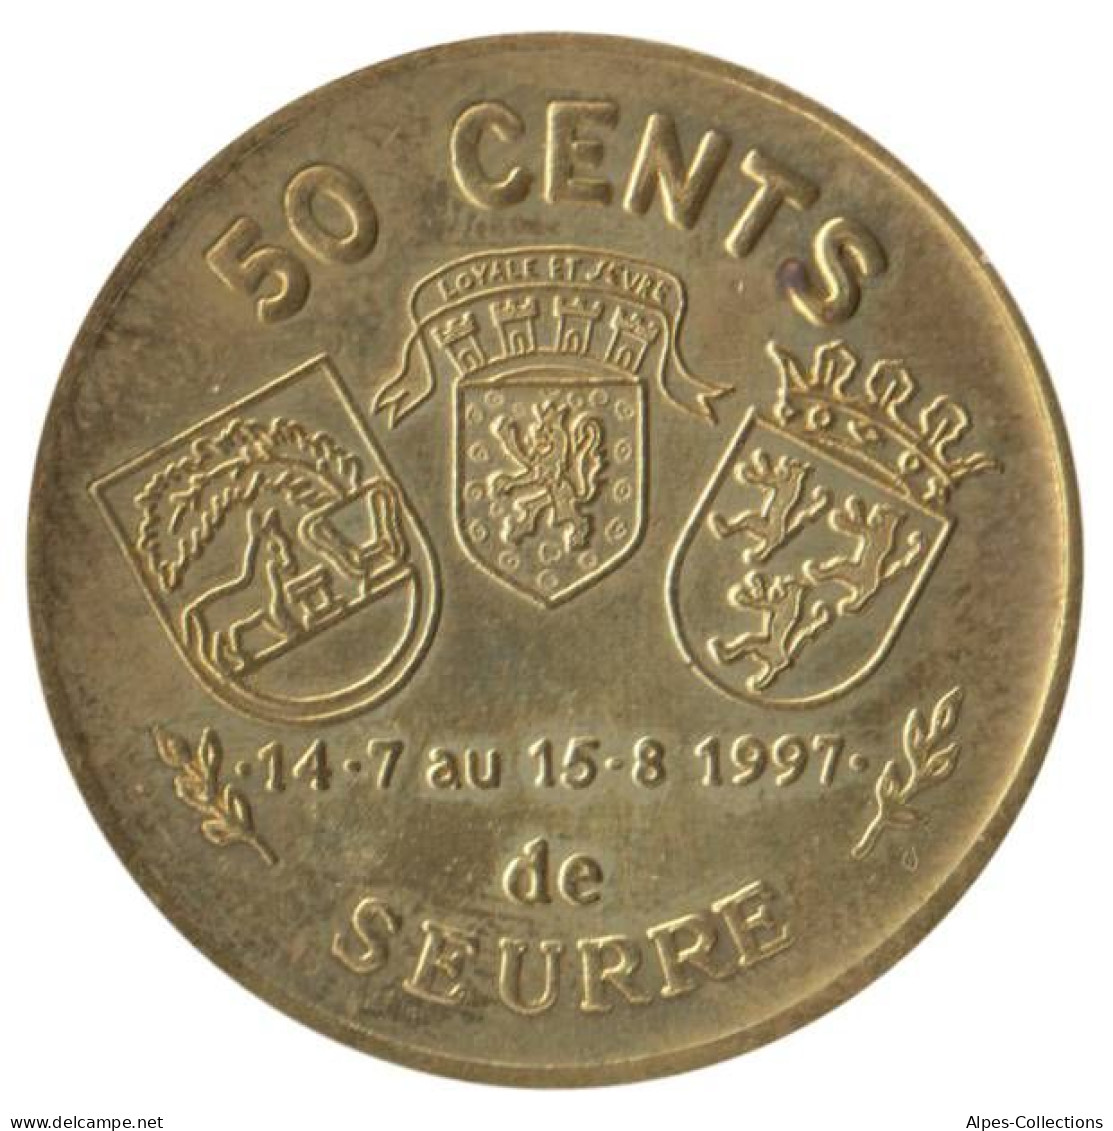 SEURRE - EU0005.1 - 50 CENTS EURO DES VILLES - Réf: NR- 1997 - Euros Of The Cities